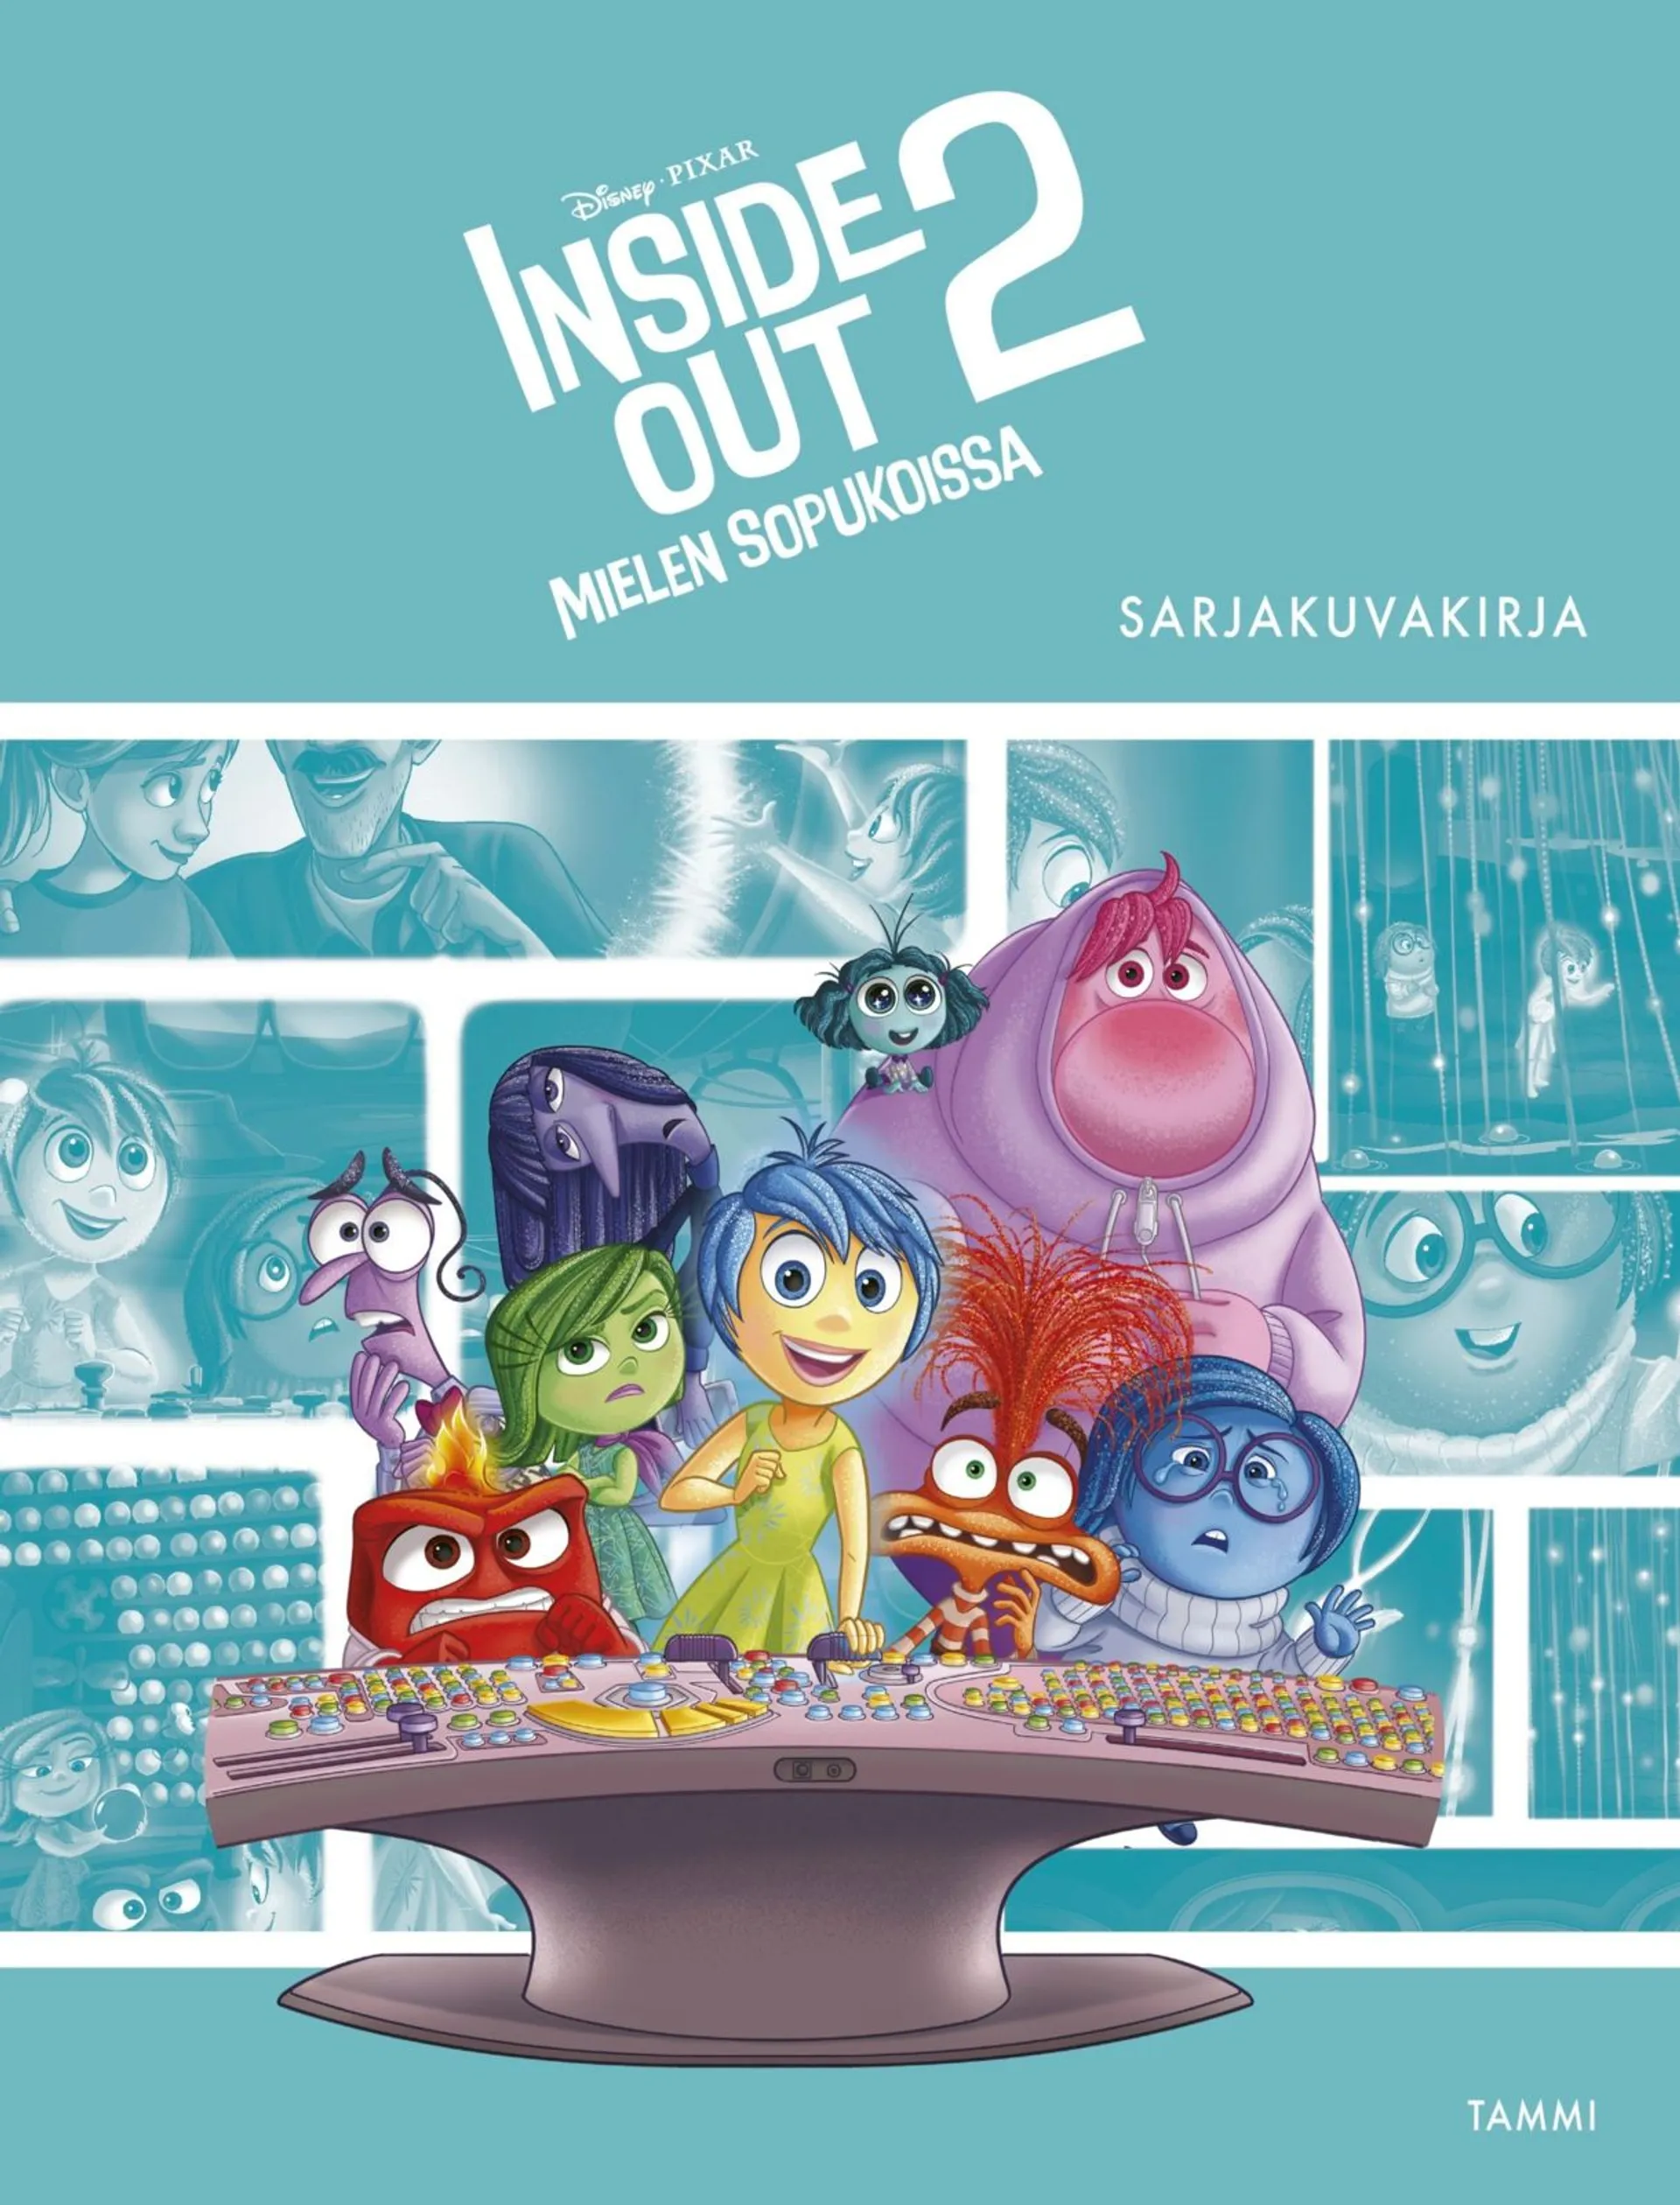 Disney Pixar. Inside Out 2. Sarjakuvakirja - Mielen sopukoissa